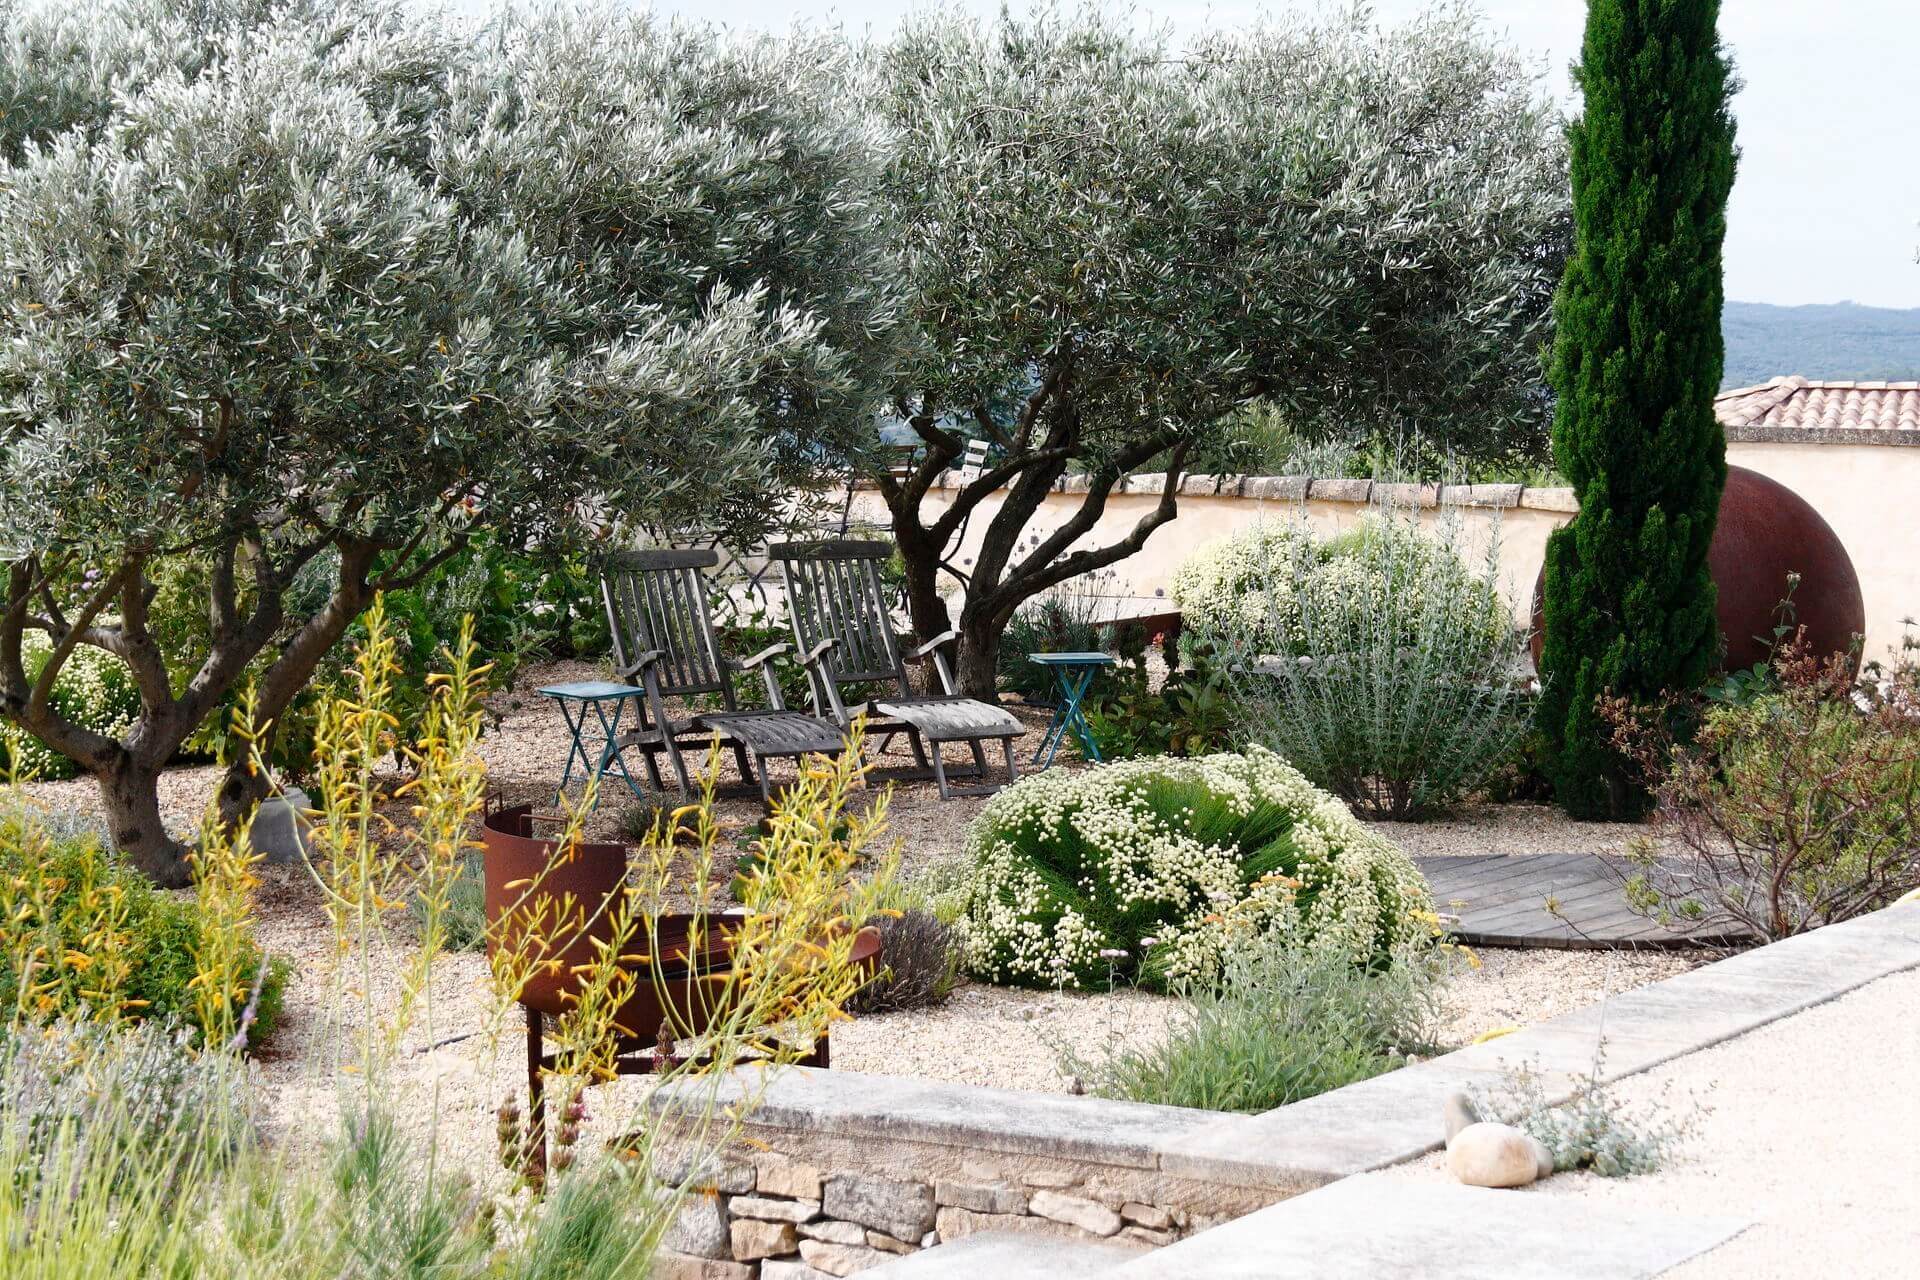 Sous les oliviers chaises longues, BQQ en métal brut, terrasse bois, jardin sur gravier, jardin sec, muret en pierre taillée.